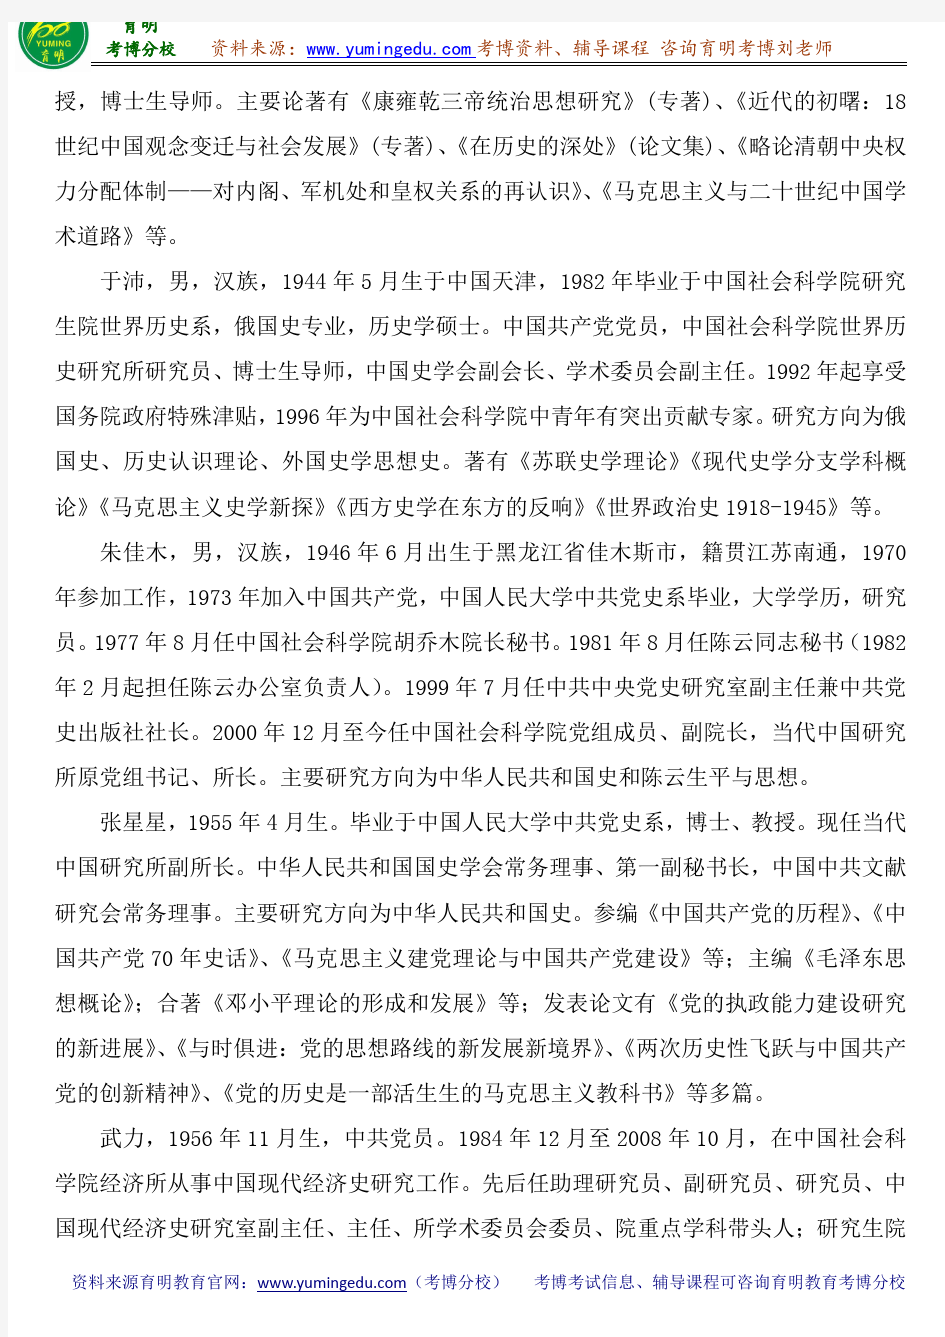 中国社会科学院中国史考博参考书目导师笔记重点